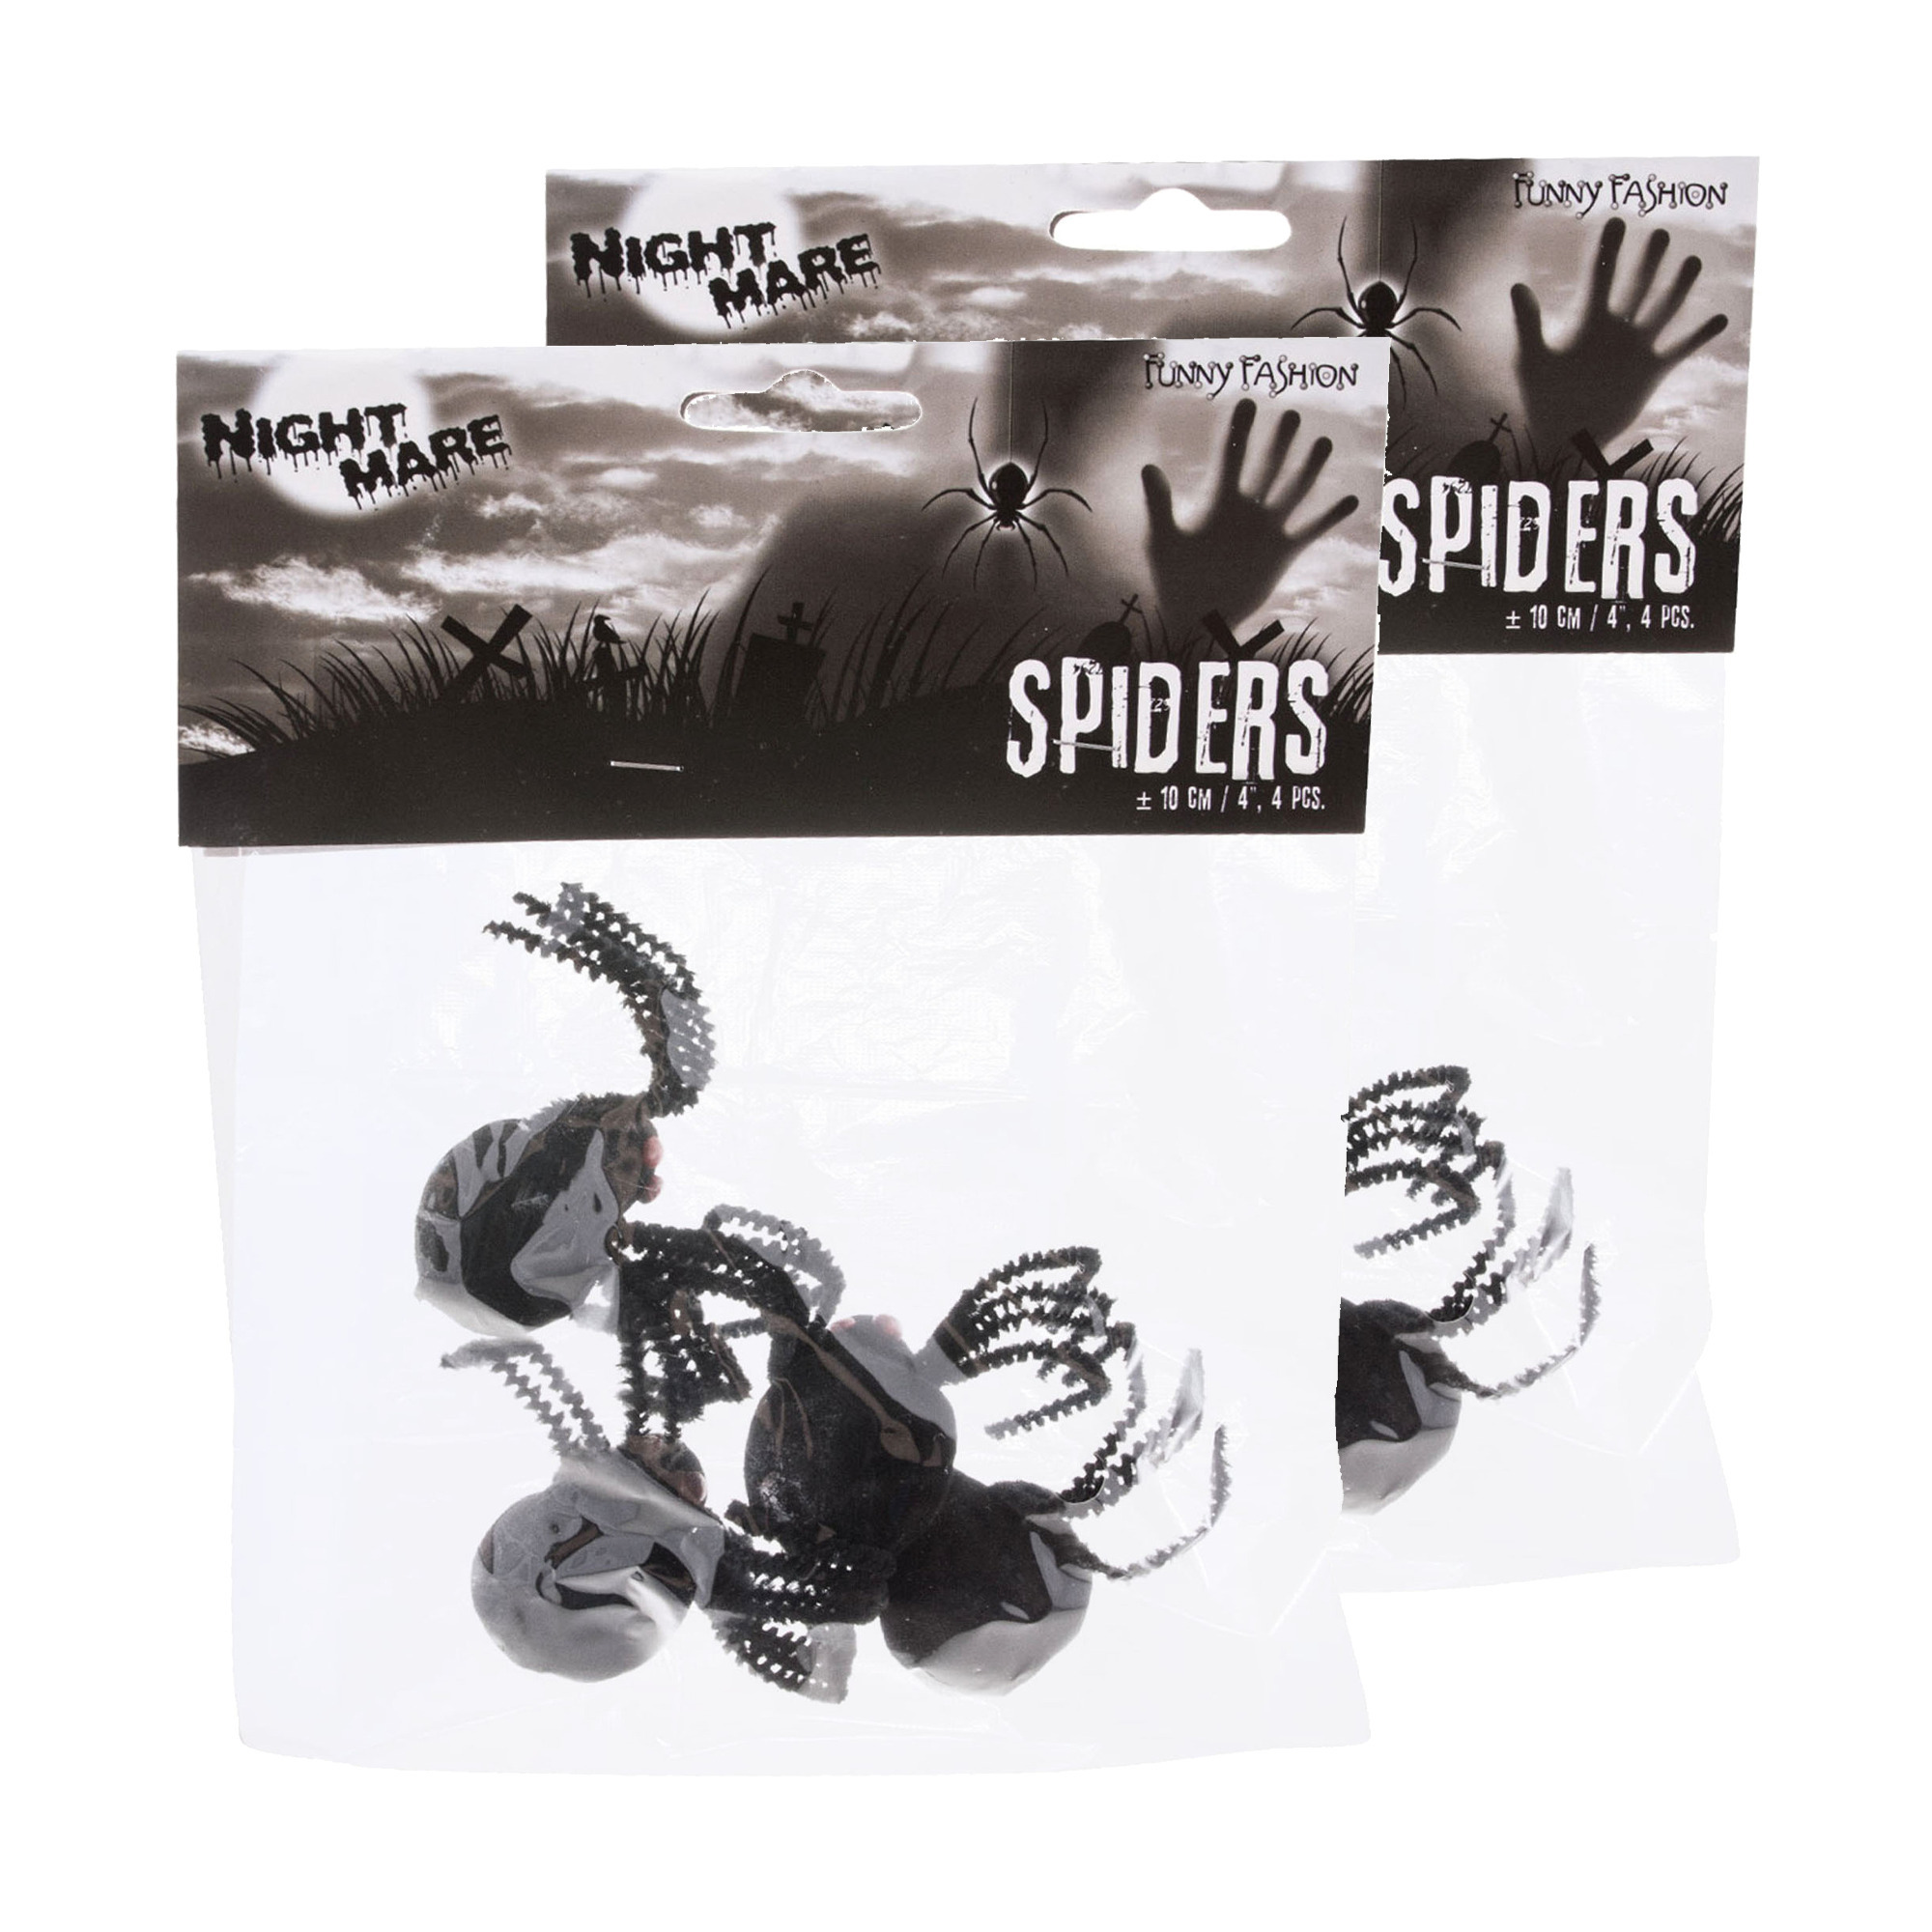 Enge Halloween nep/namaak spinnen - set 12x stuks - zwart - plastic - insecten/dieren